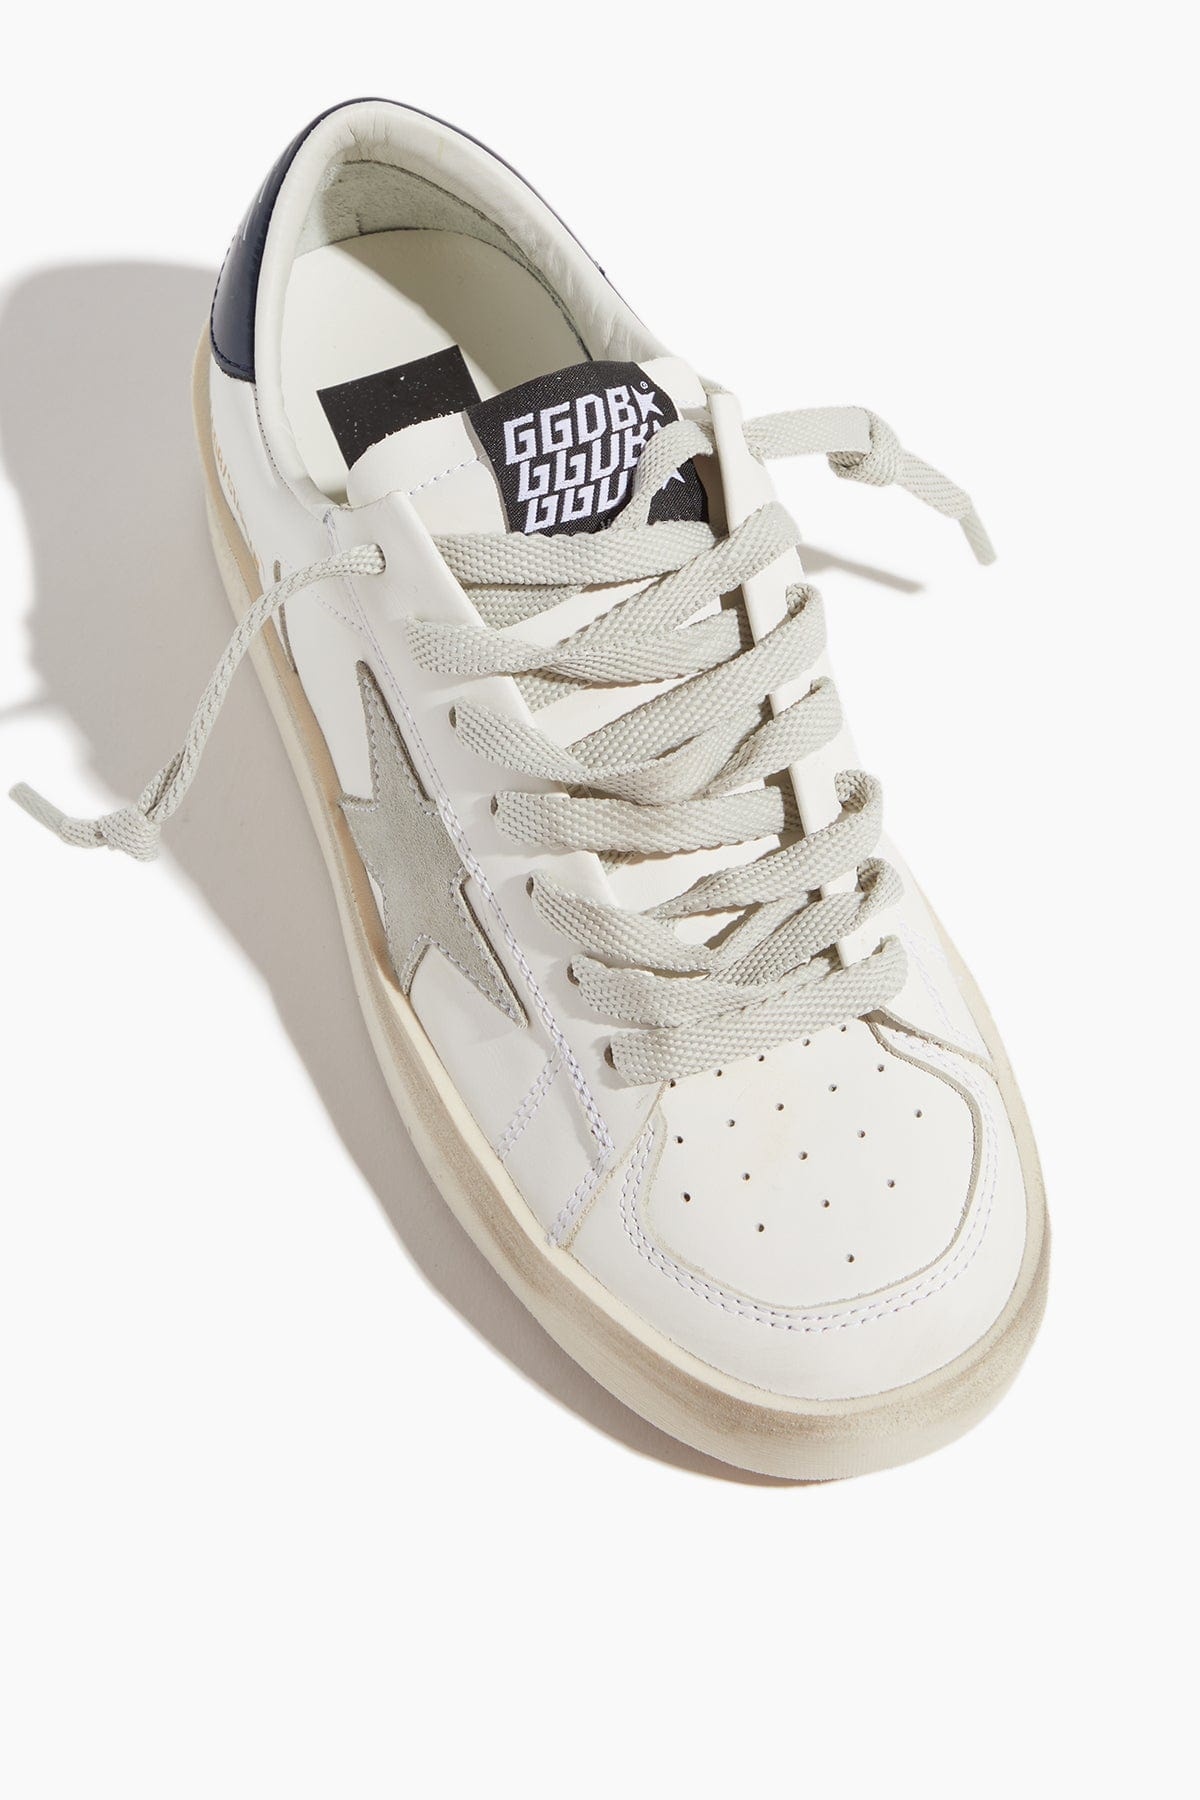 Stardan Sneaker in White/Ice/Black - 4